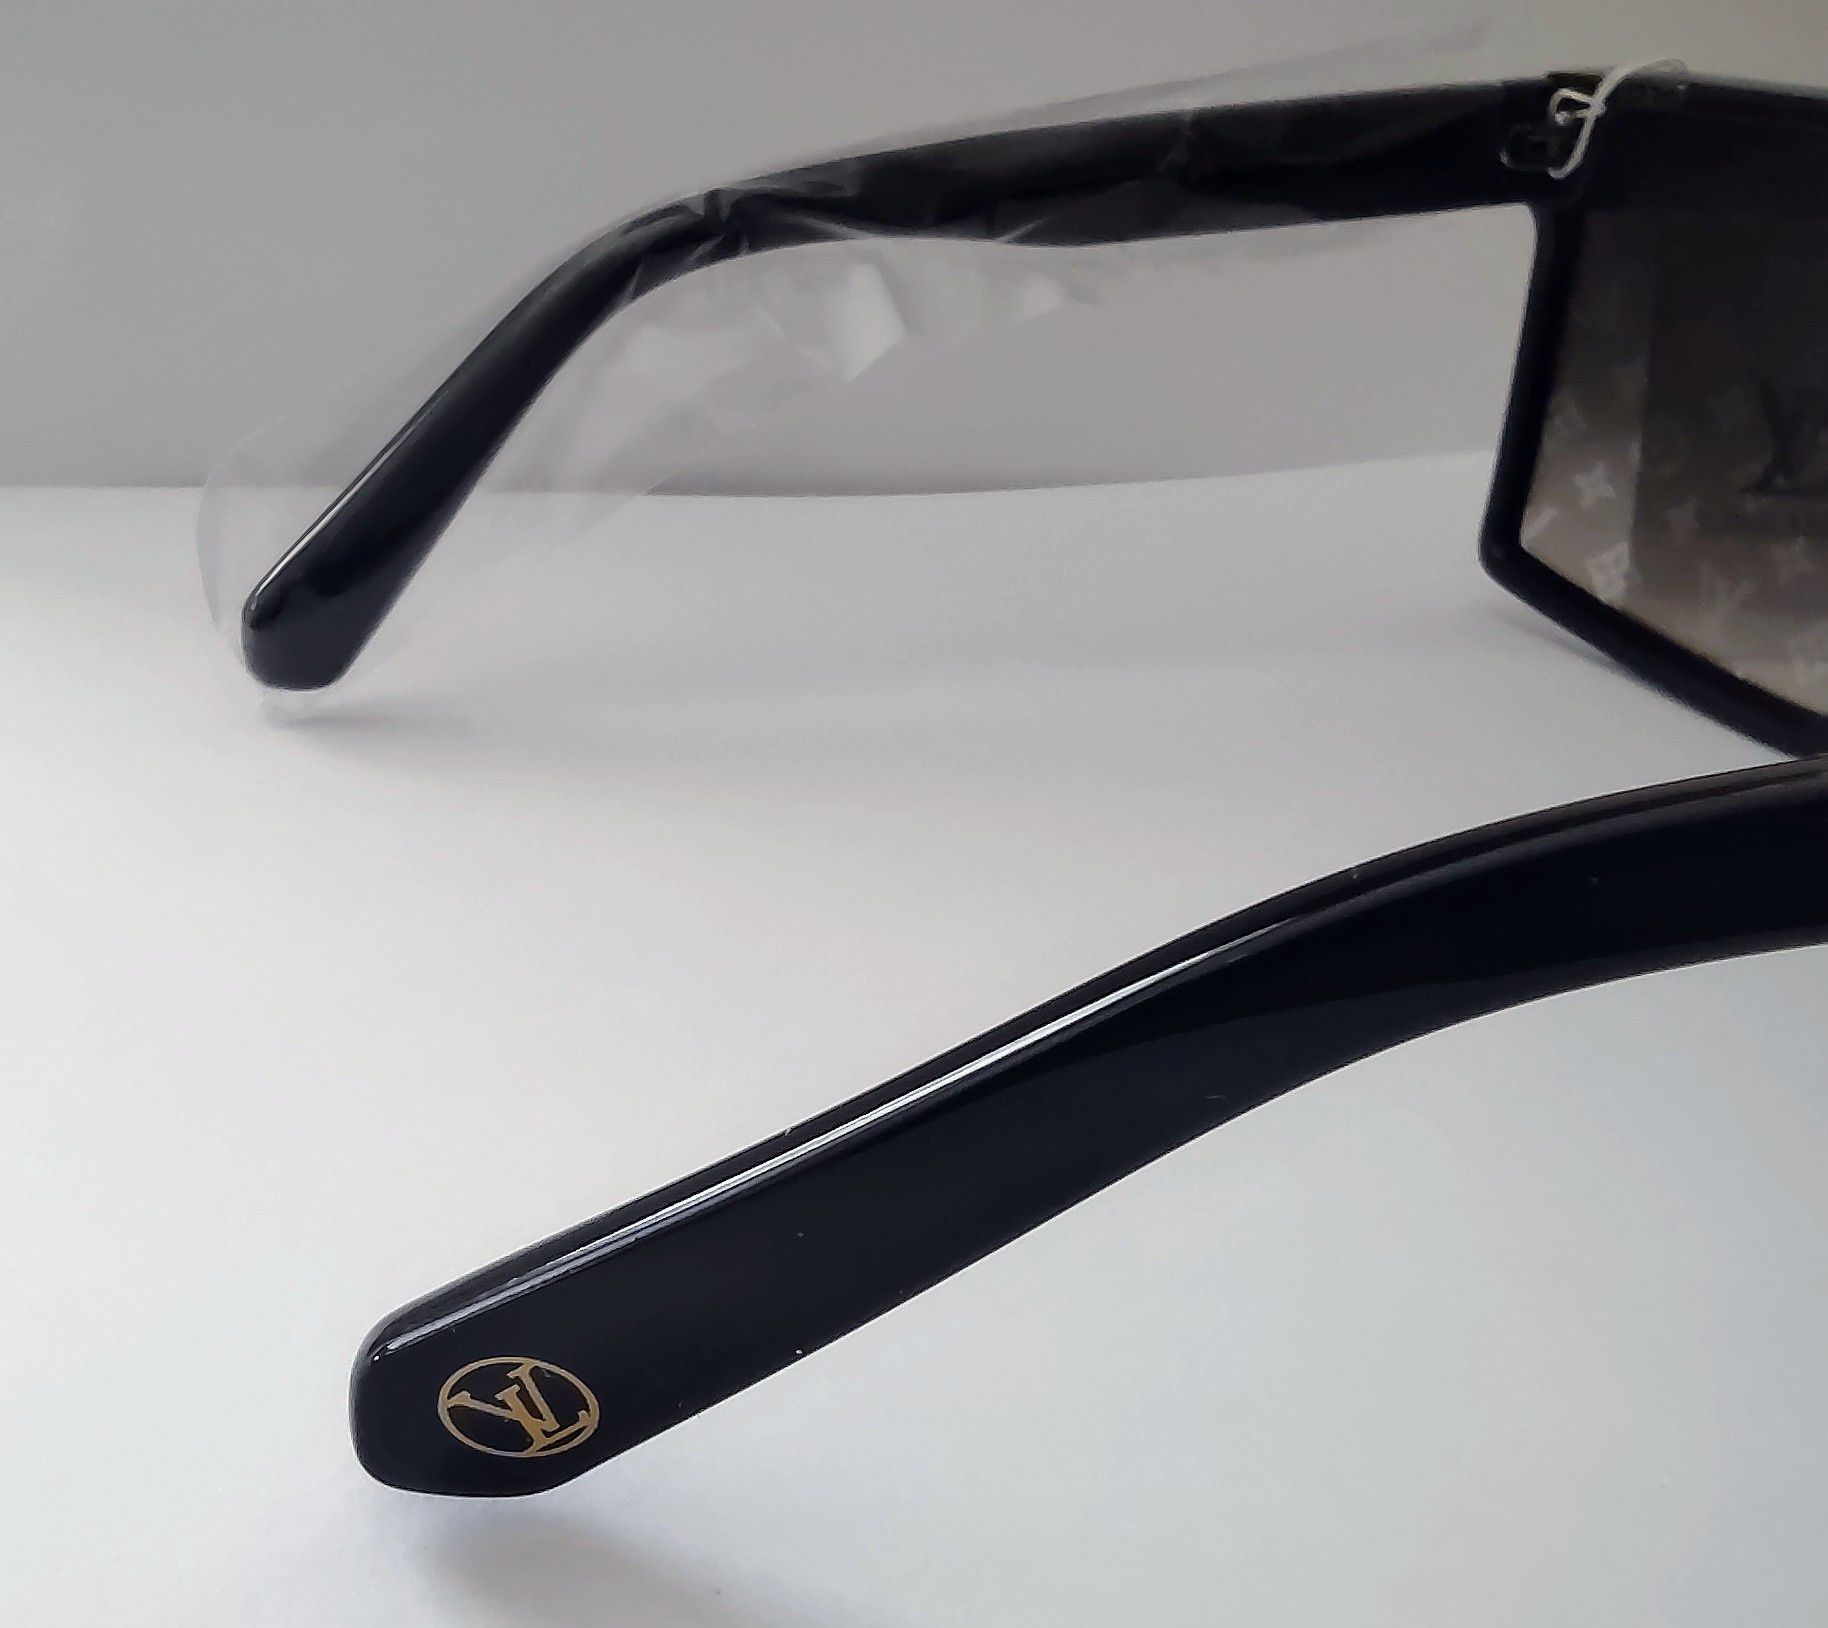 Okulary przeciwsłoneczne męskie damskie unisex LV Louis Vuitton Hit